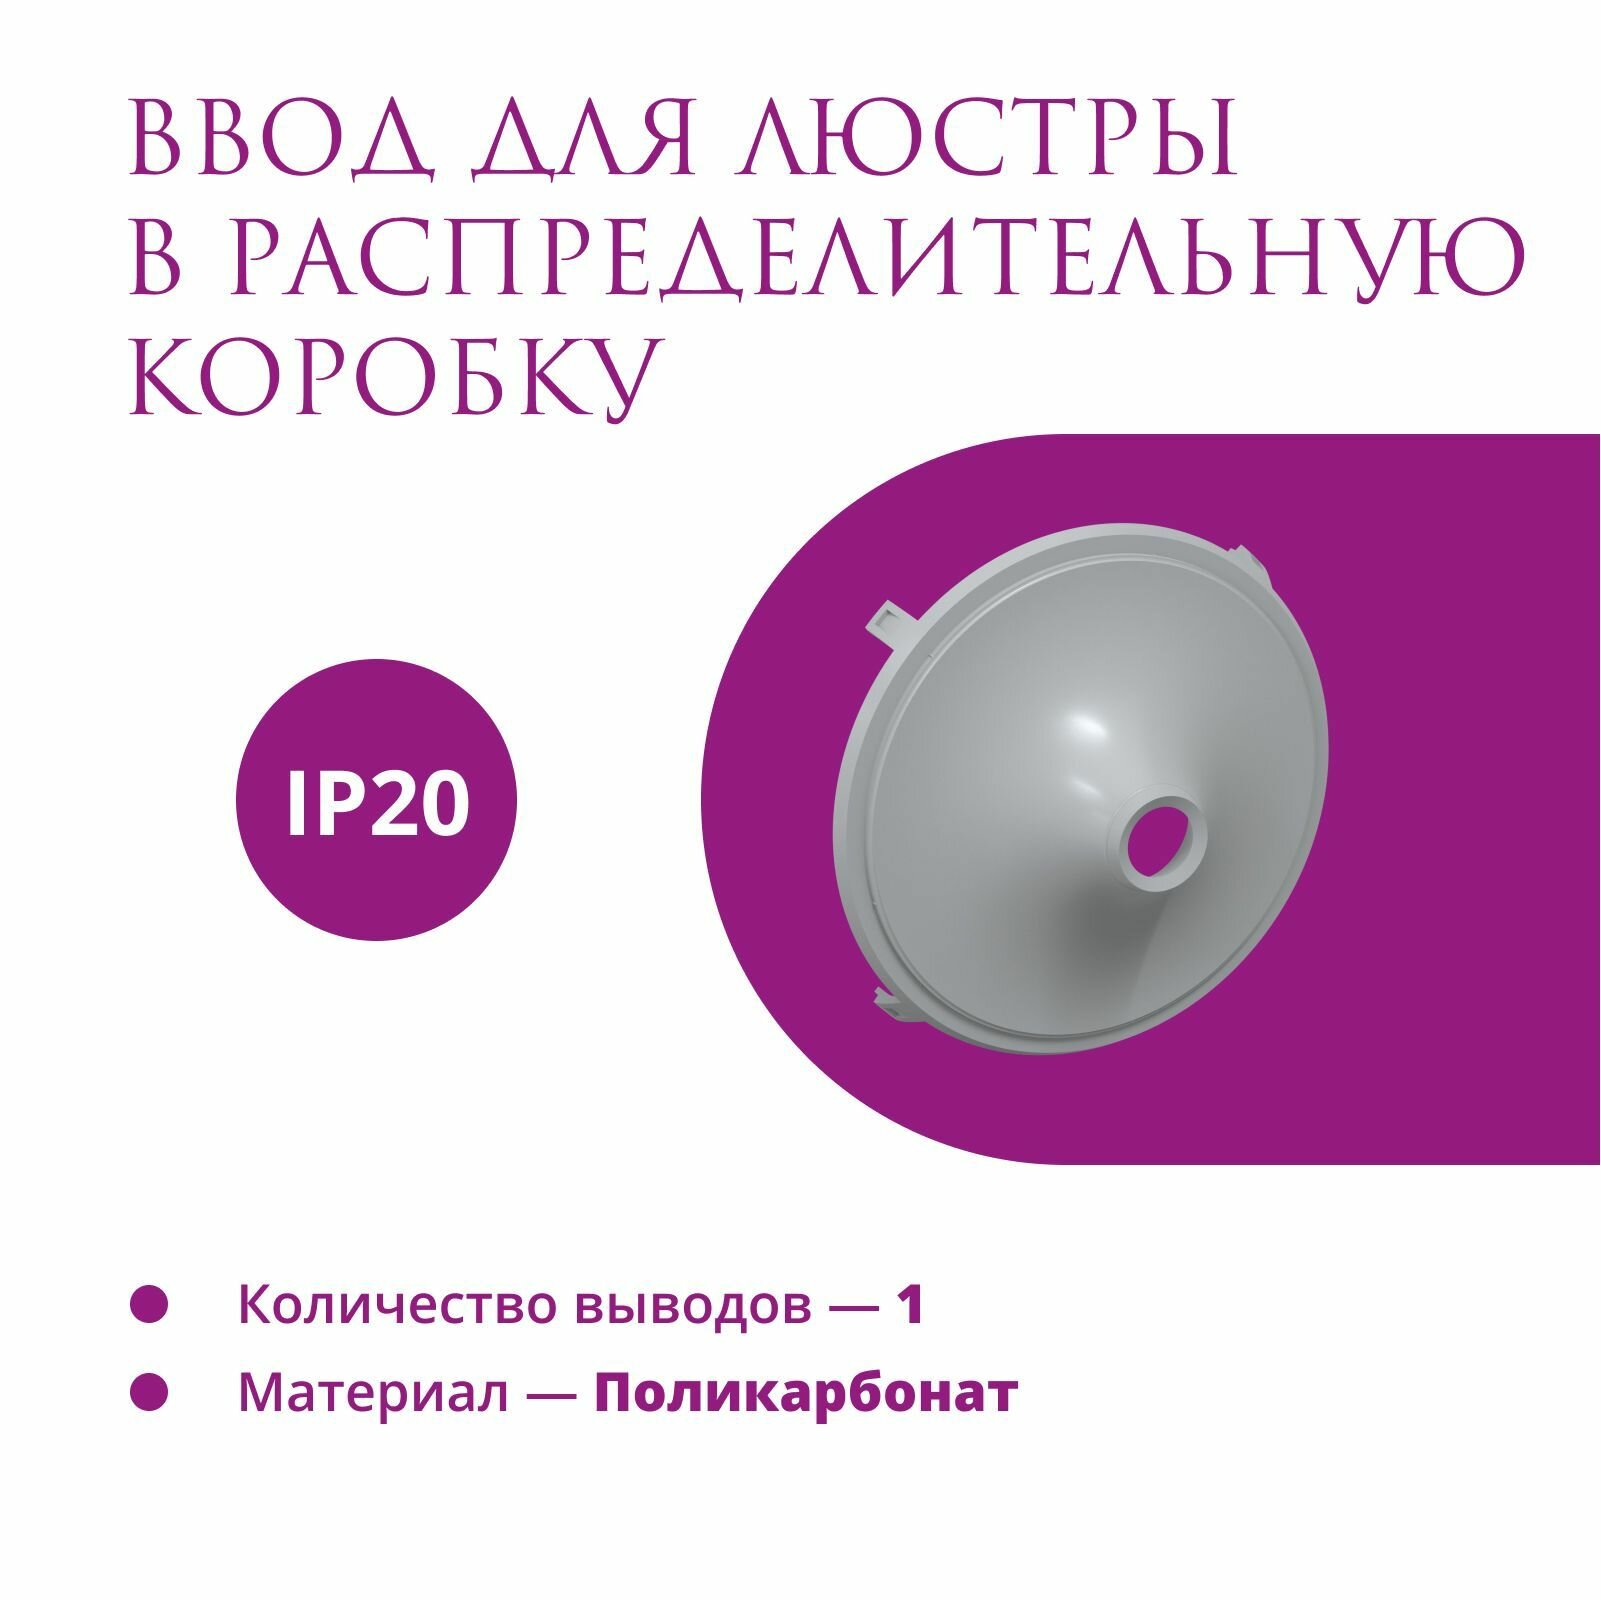 Ввод в распределительную коробку Rotondo (OneKeyElectro) для светильника, цвет серый.